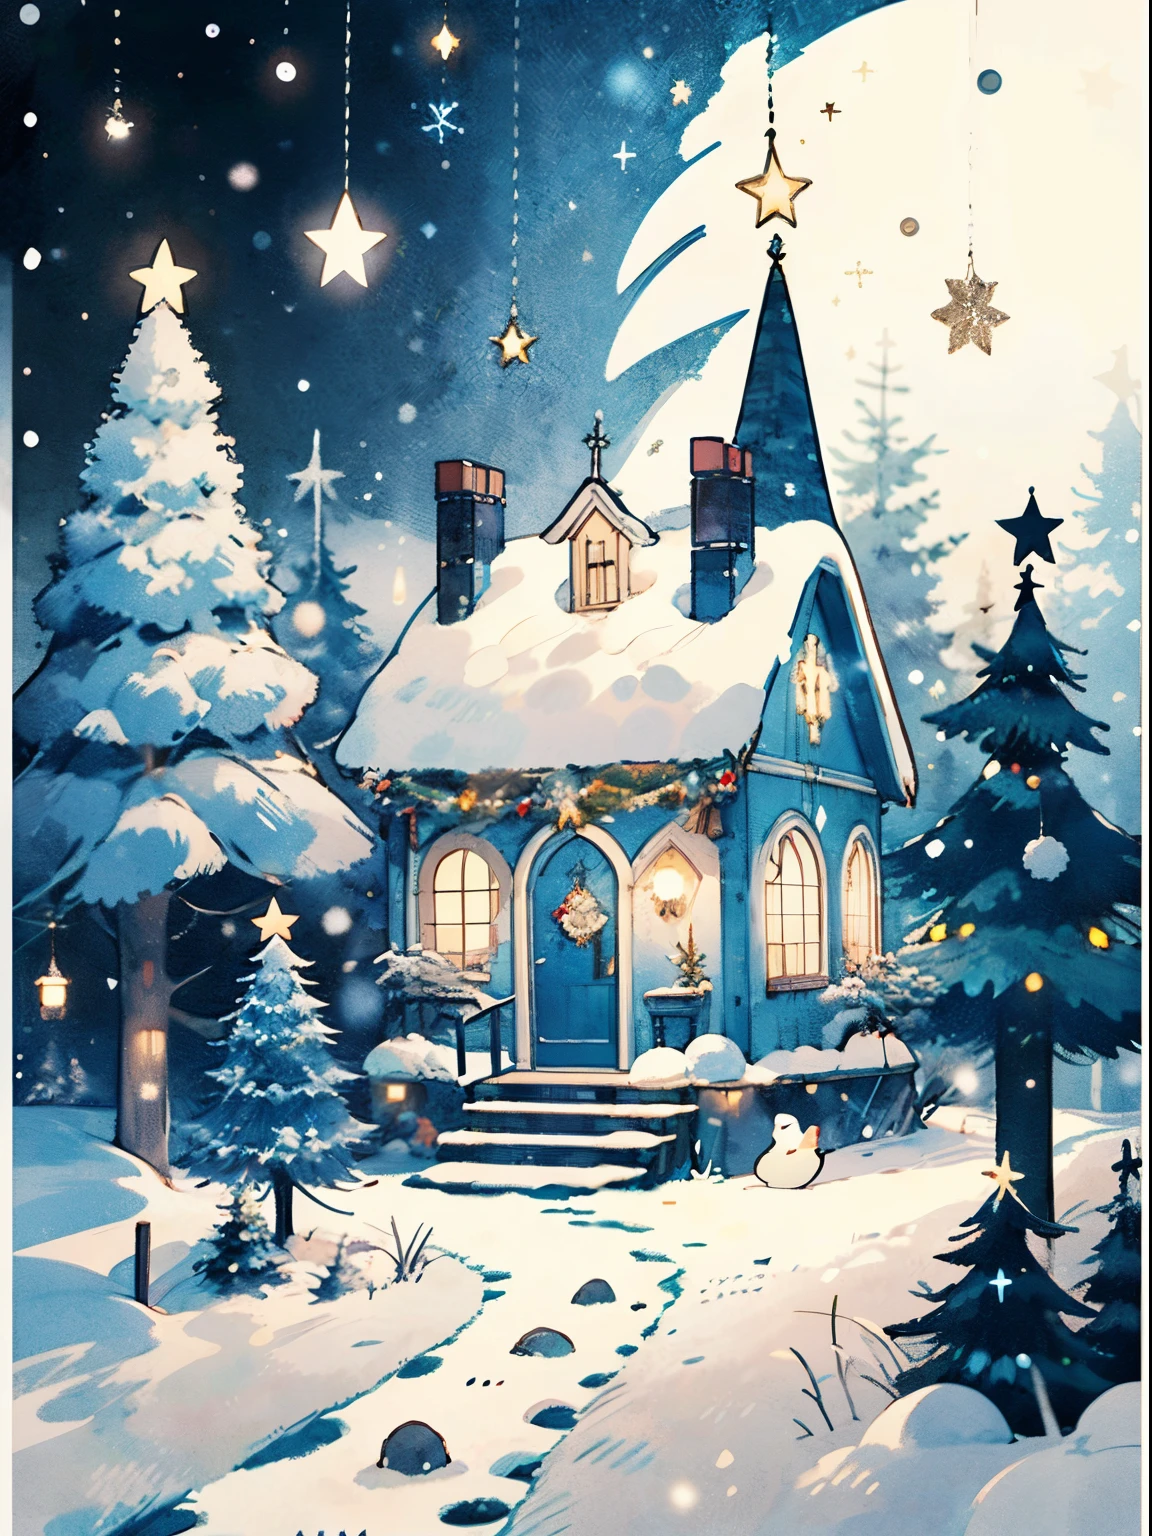 (((傑作))),最高品質, ホワイトタウン, ロシアの新年, 敬礼 , 明るい色, 雪が降る, クリスマスツリー, balls on the クリスマスツリー, 森の中の小屋, 大晦日